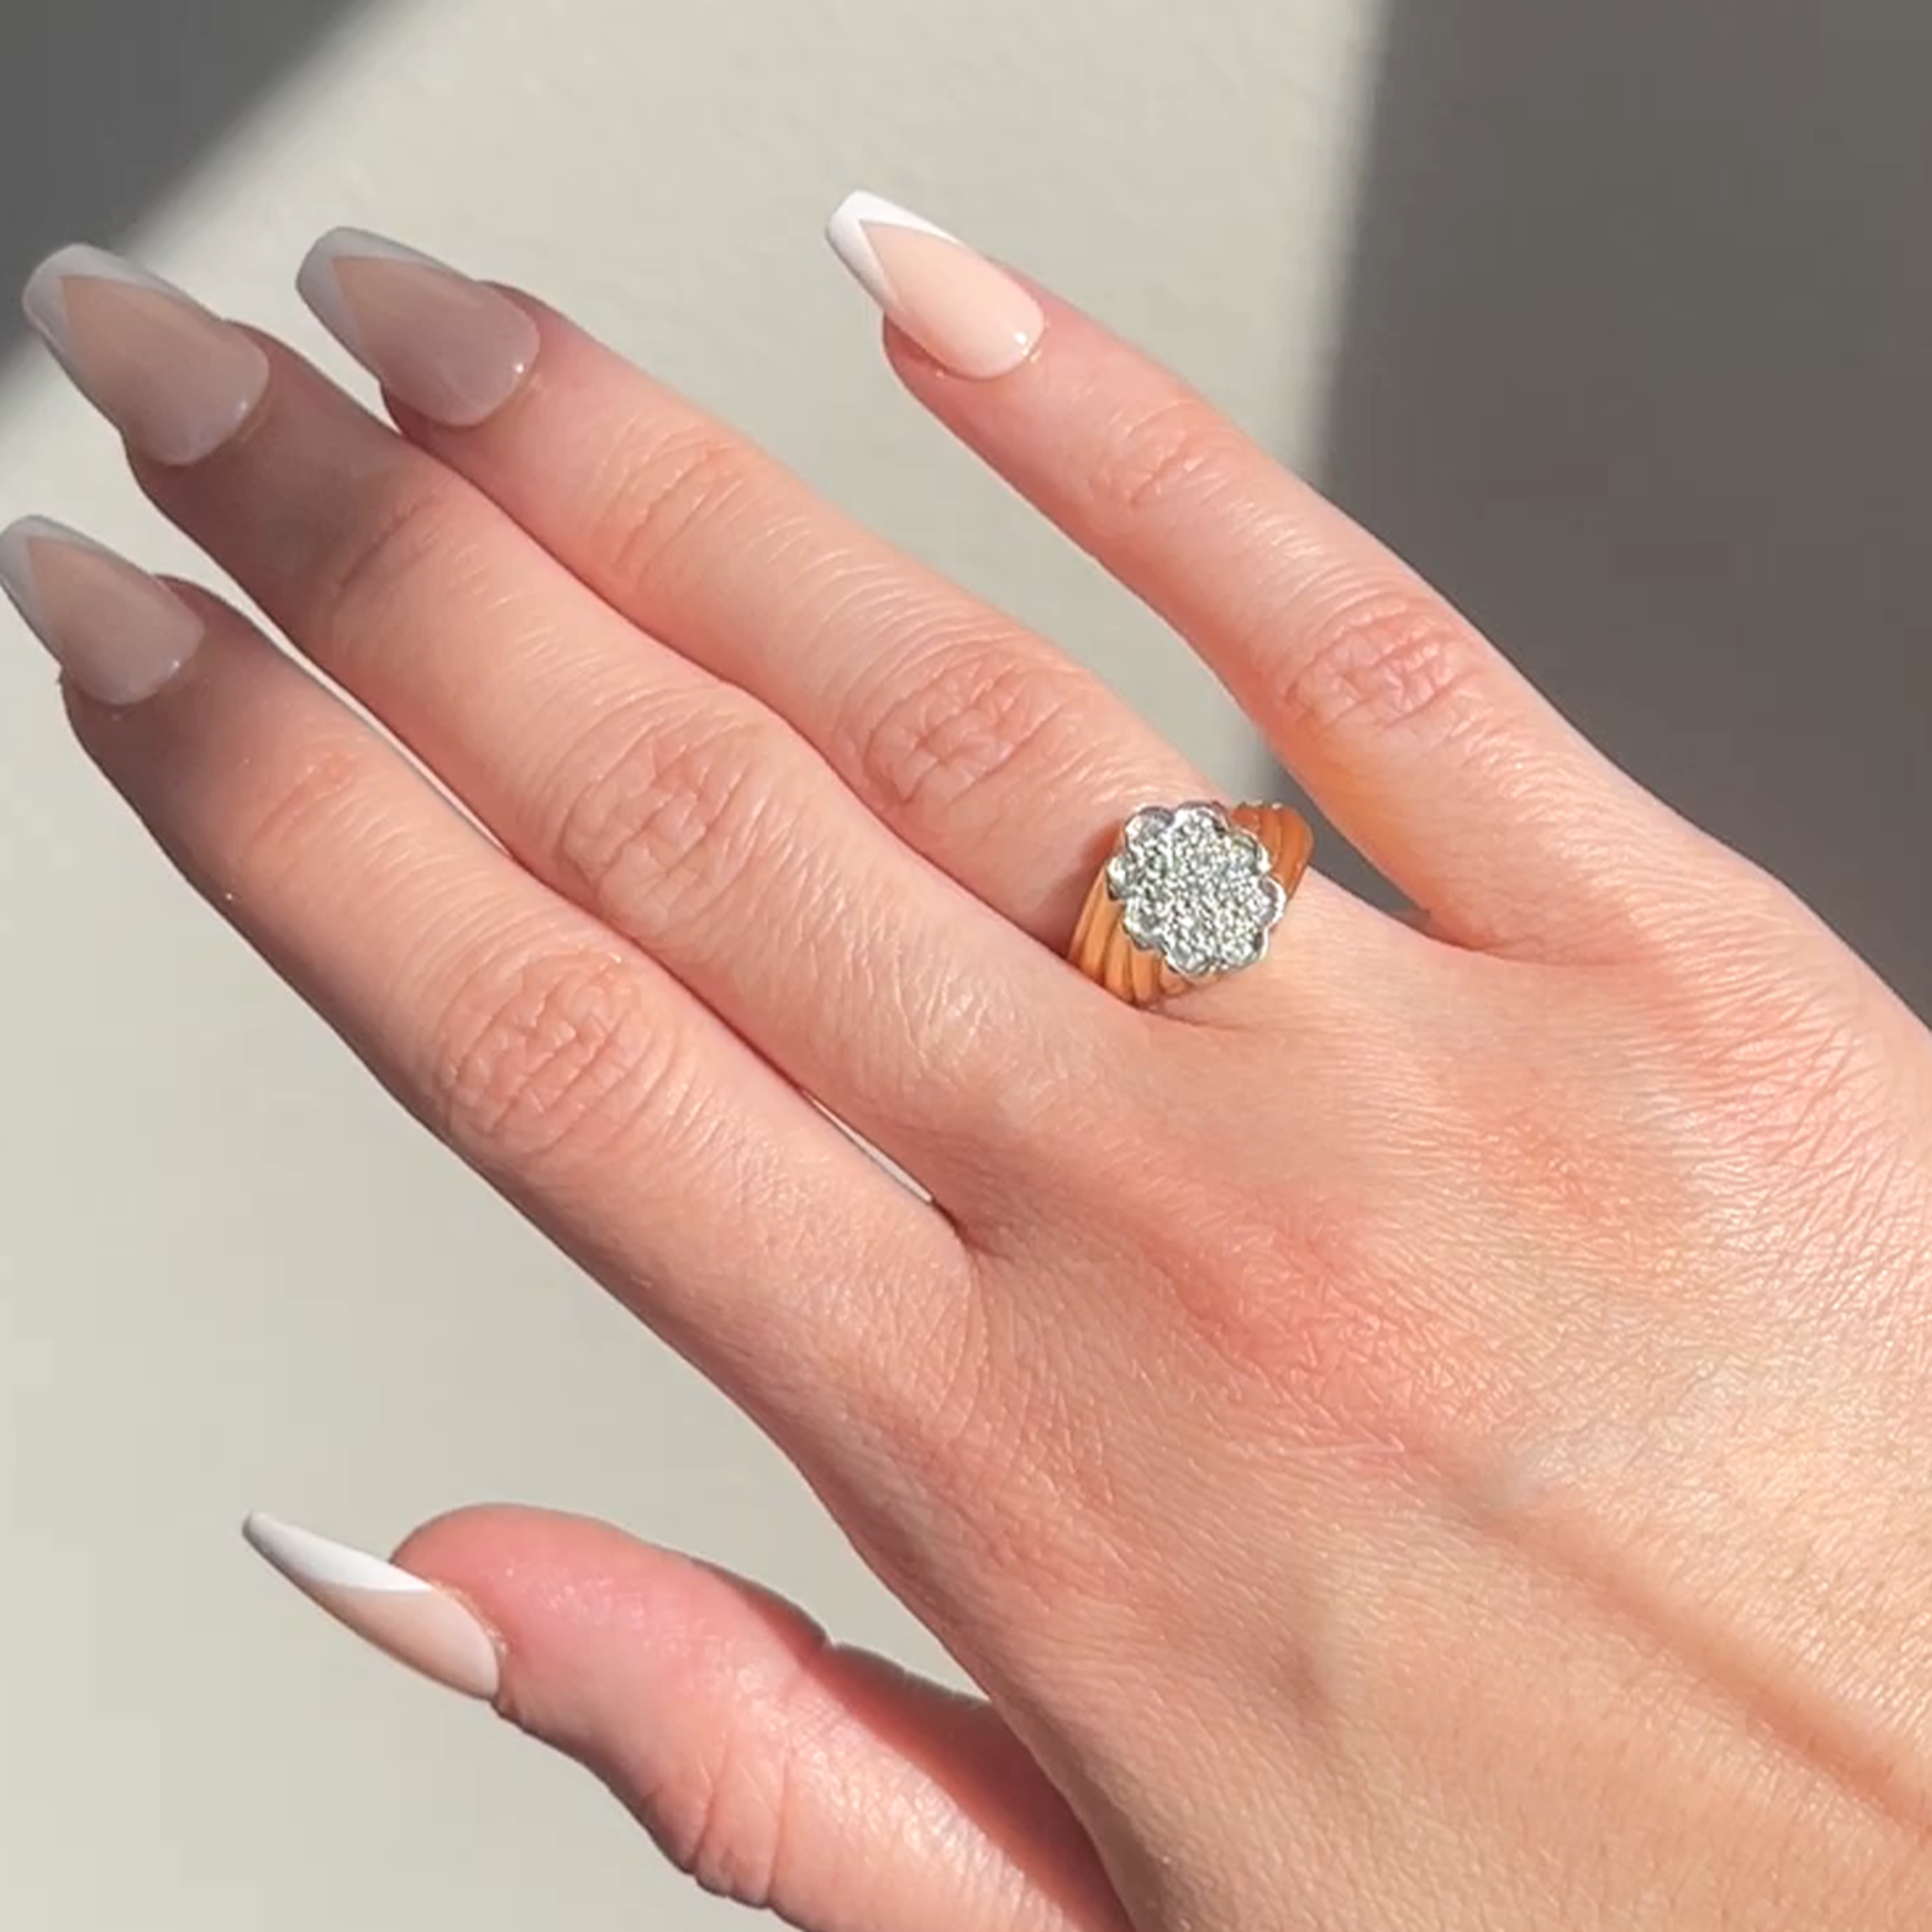 1970s 14KT Yellow Gold Diamond Ring on finger